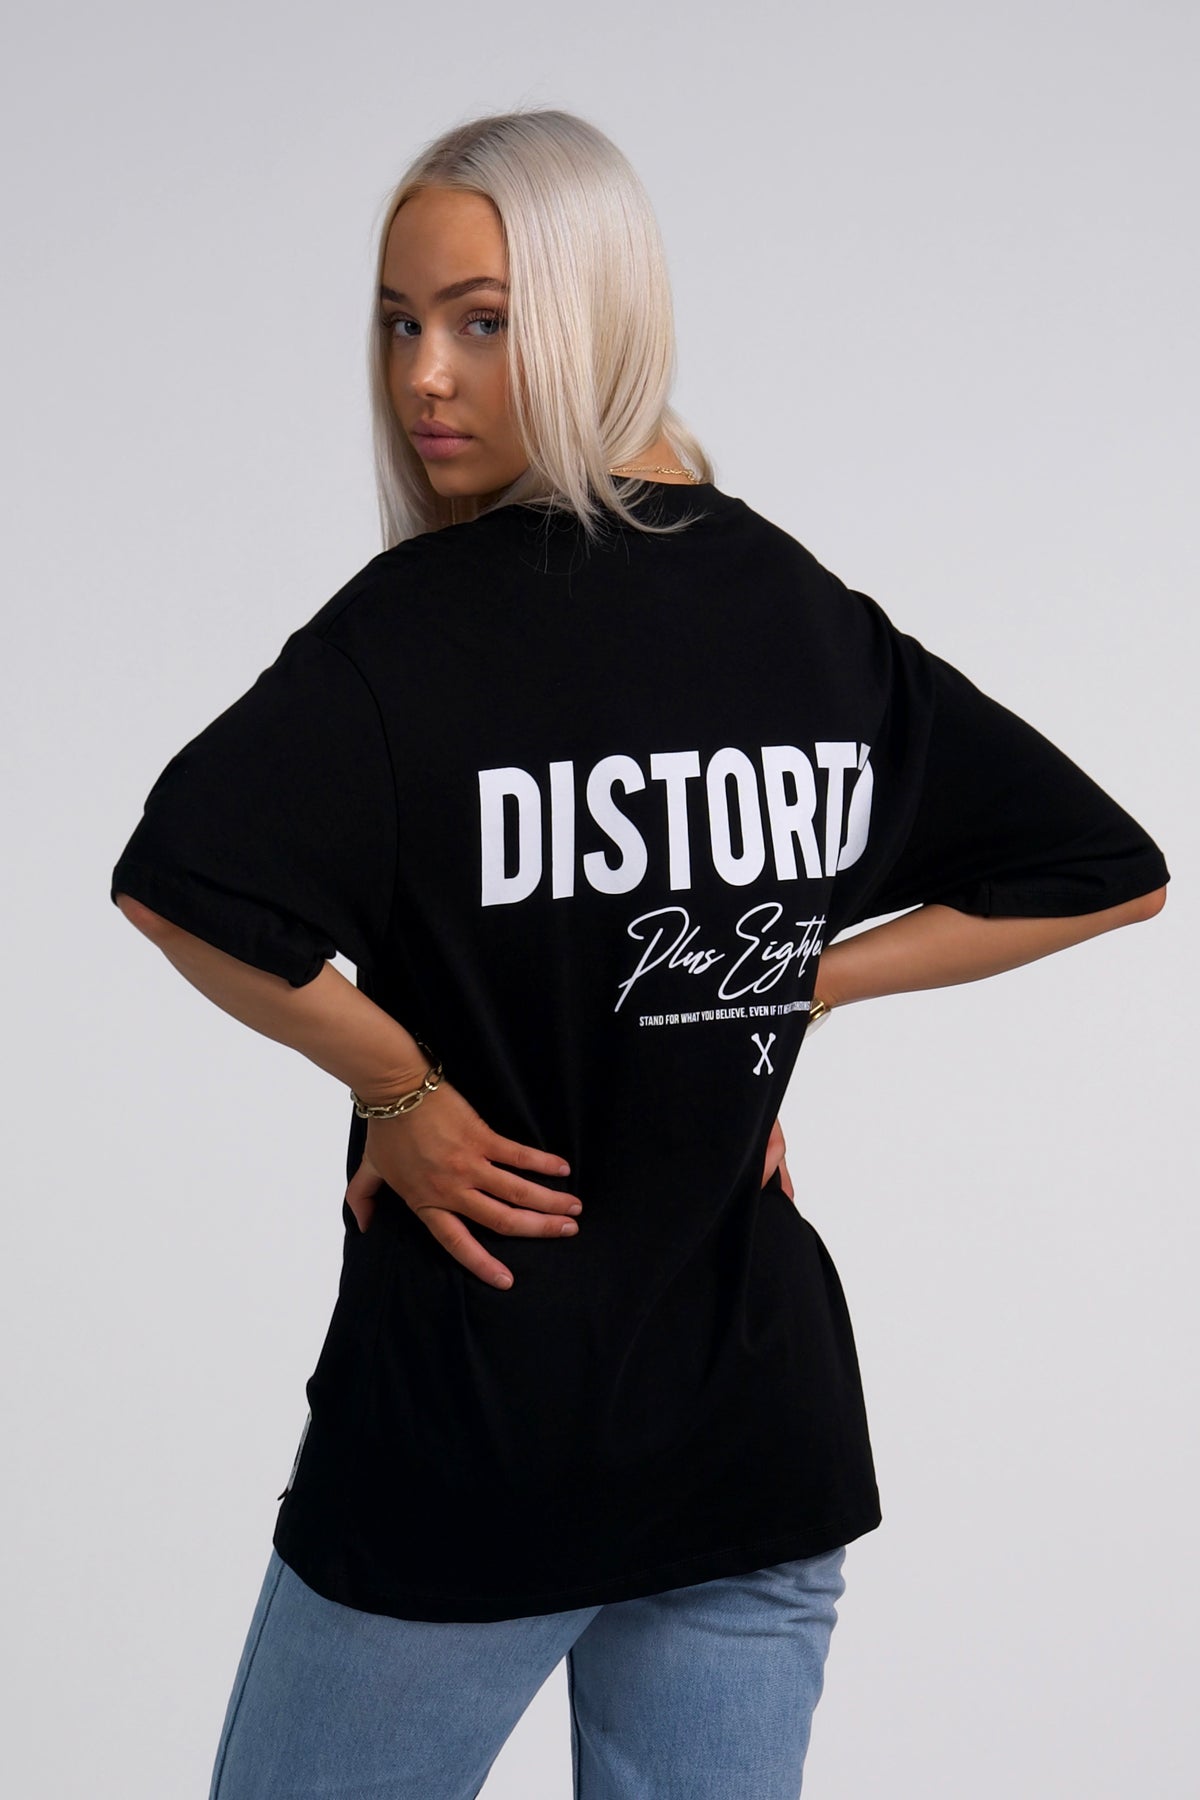 Disorte Oversized Black T-shirt